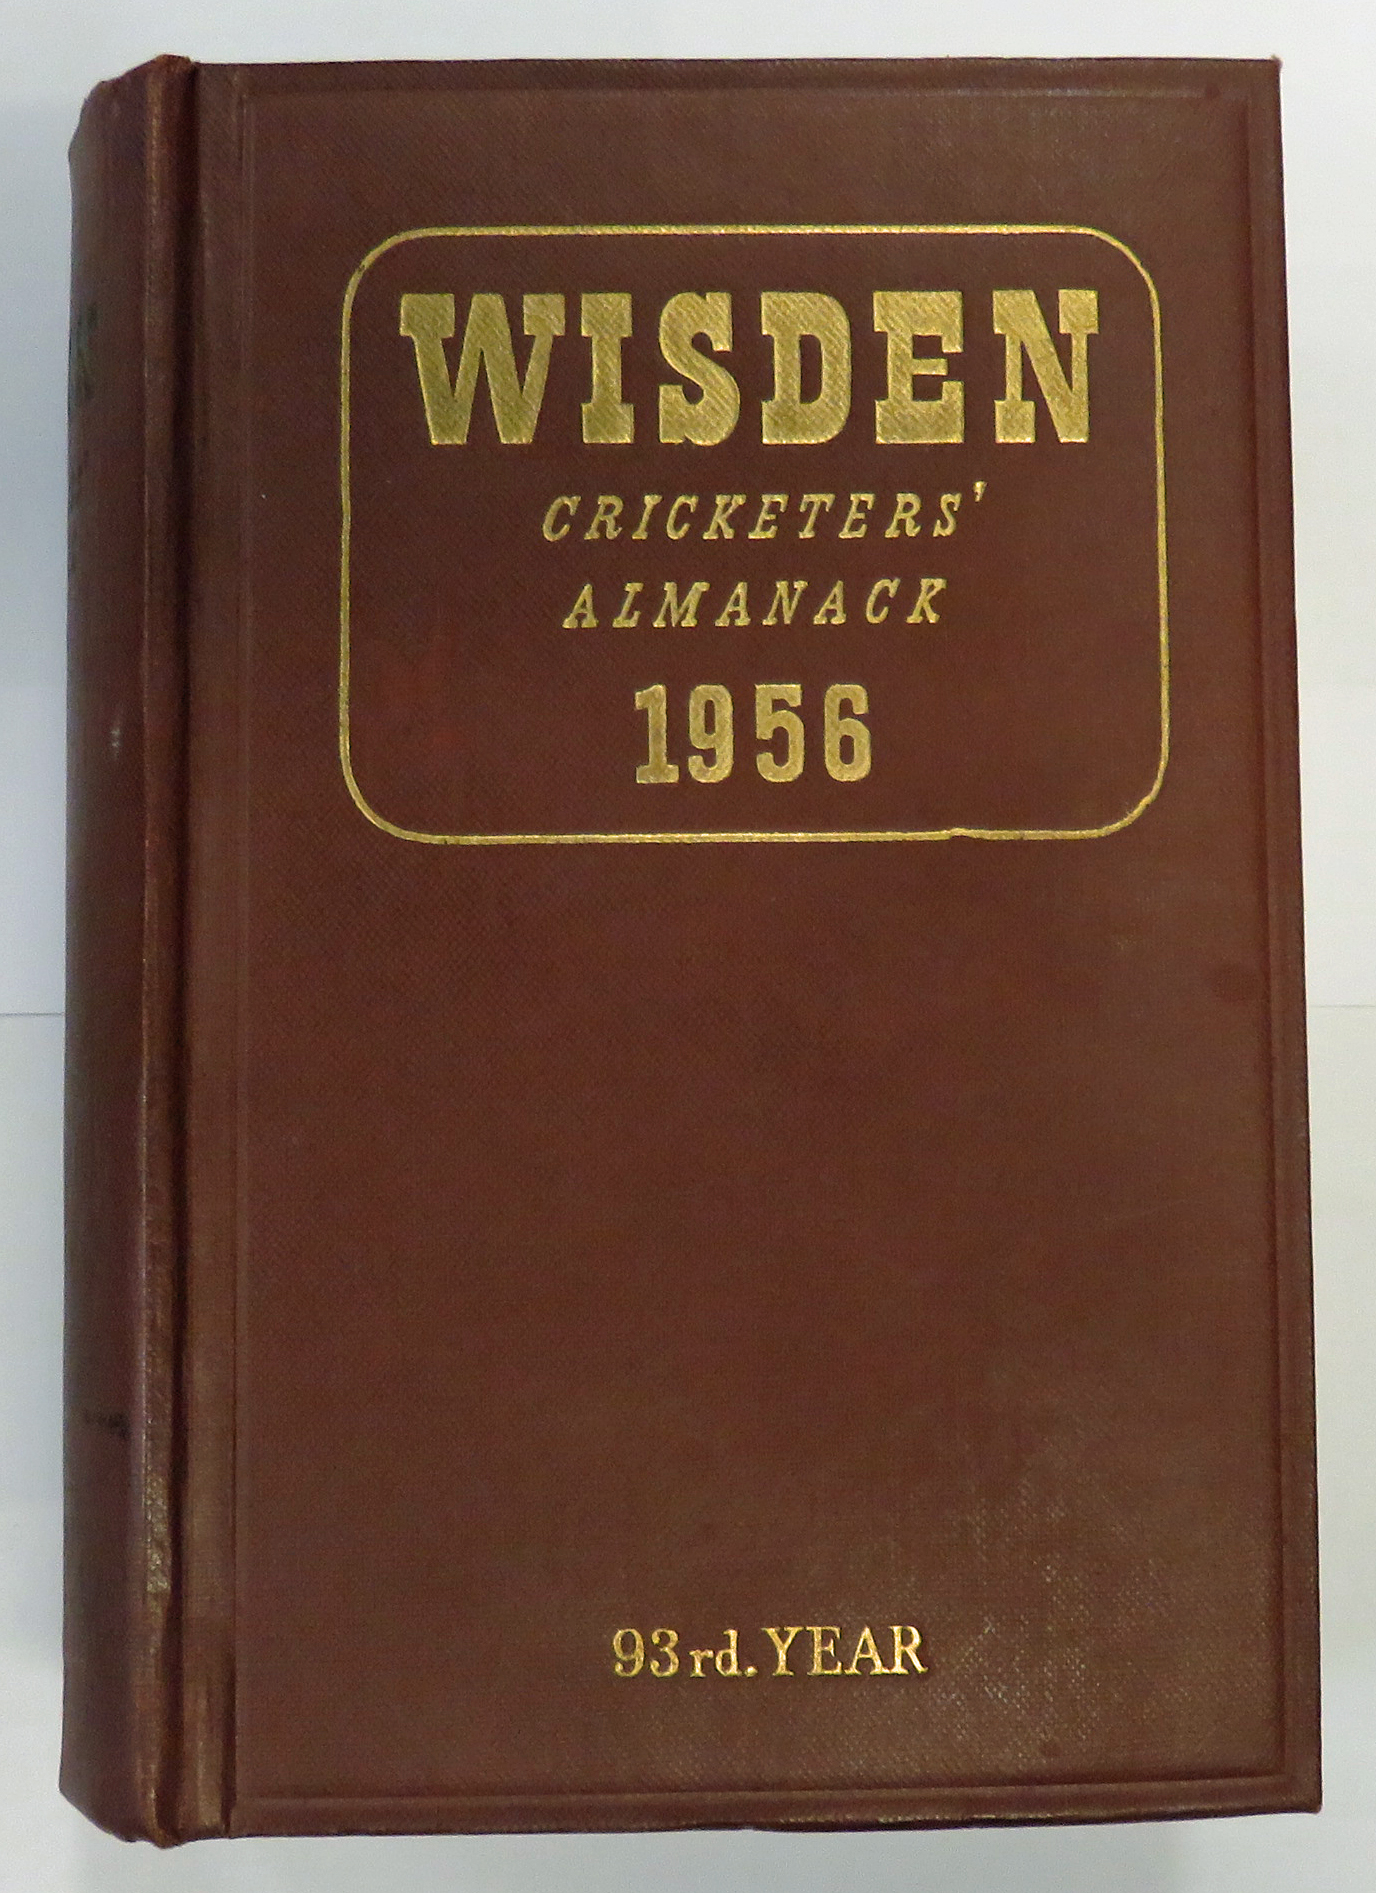 Wisden Cricketers' Almanack 1956